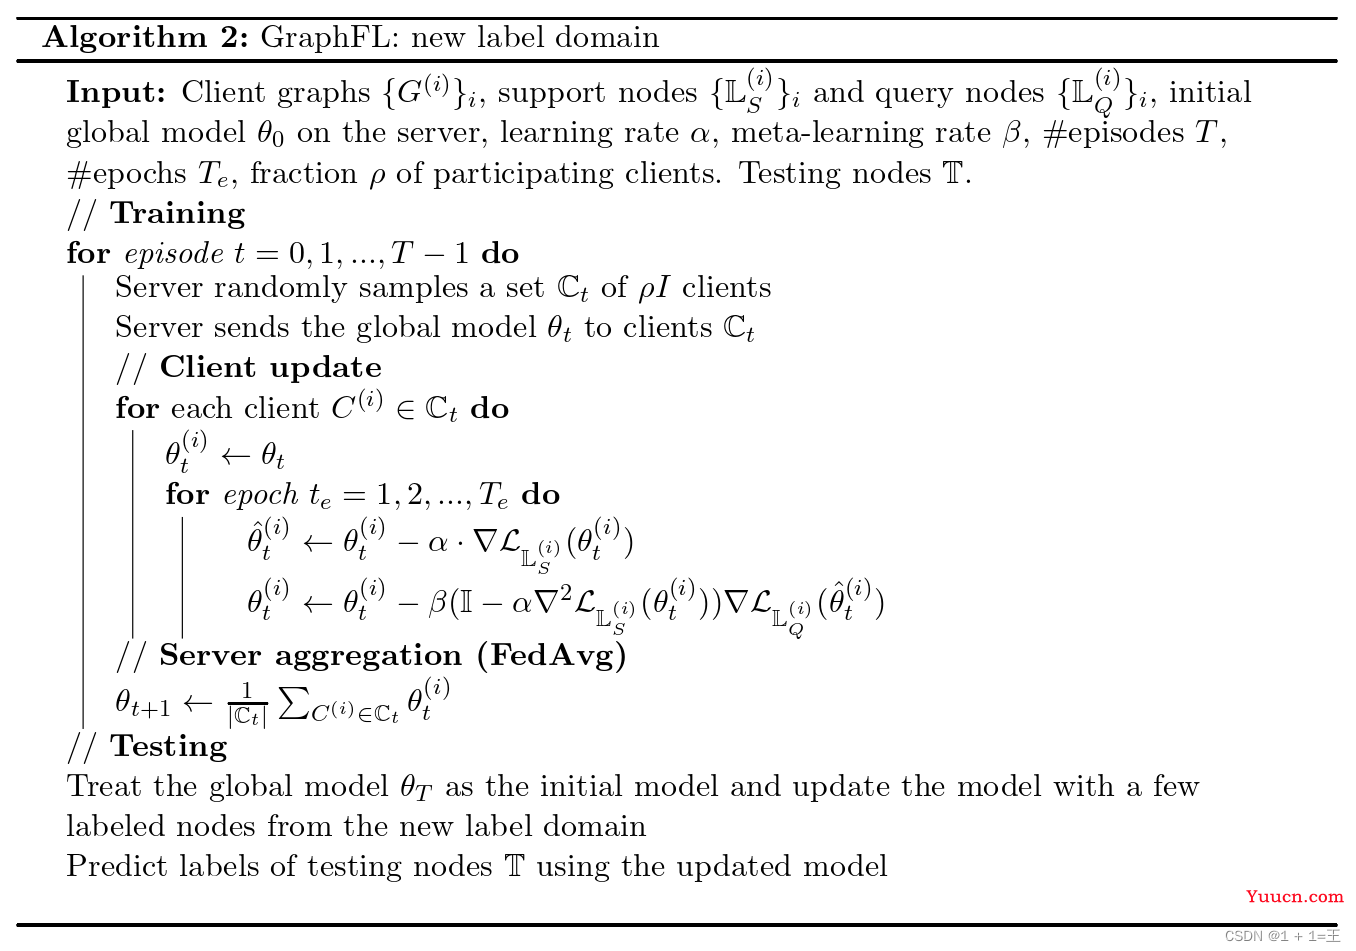 【论文导读】- GraphFL: A Federated Learning Framework for Semi-Supervised Node Classiﬁcation on Graphs